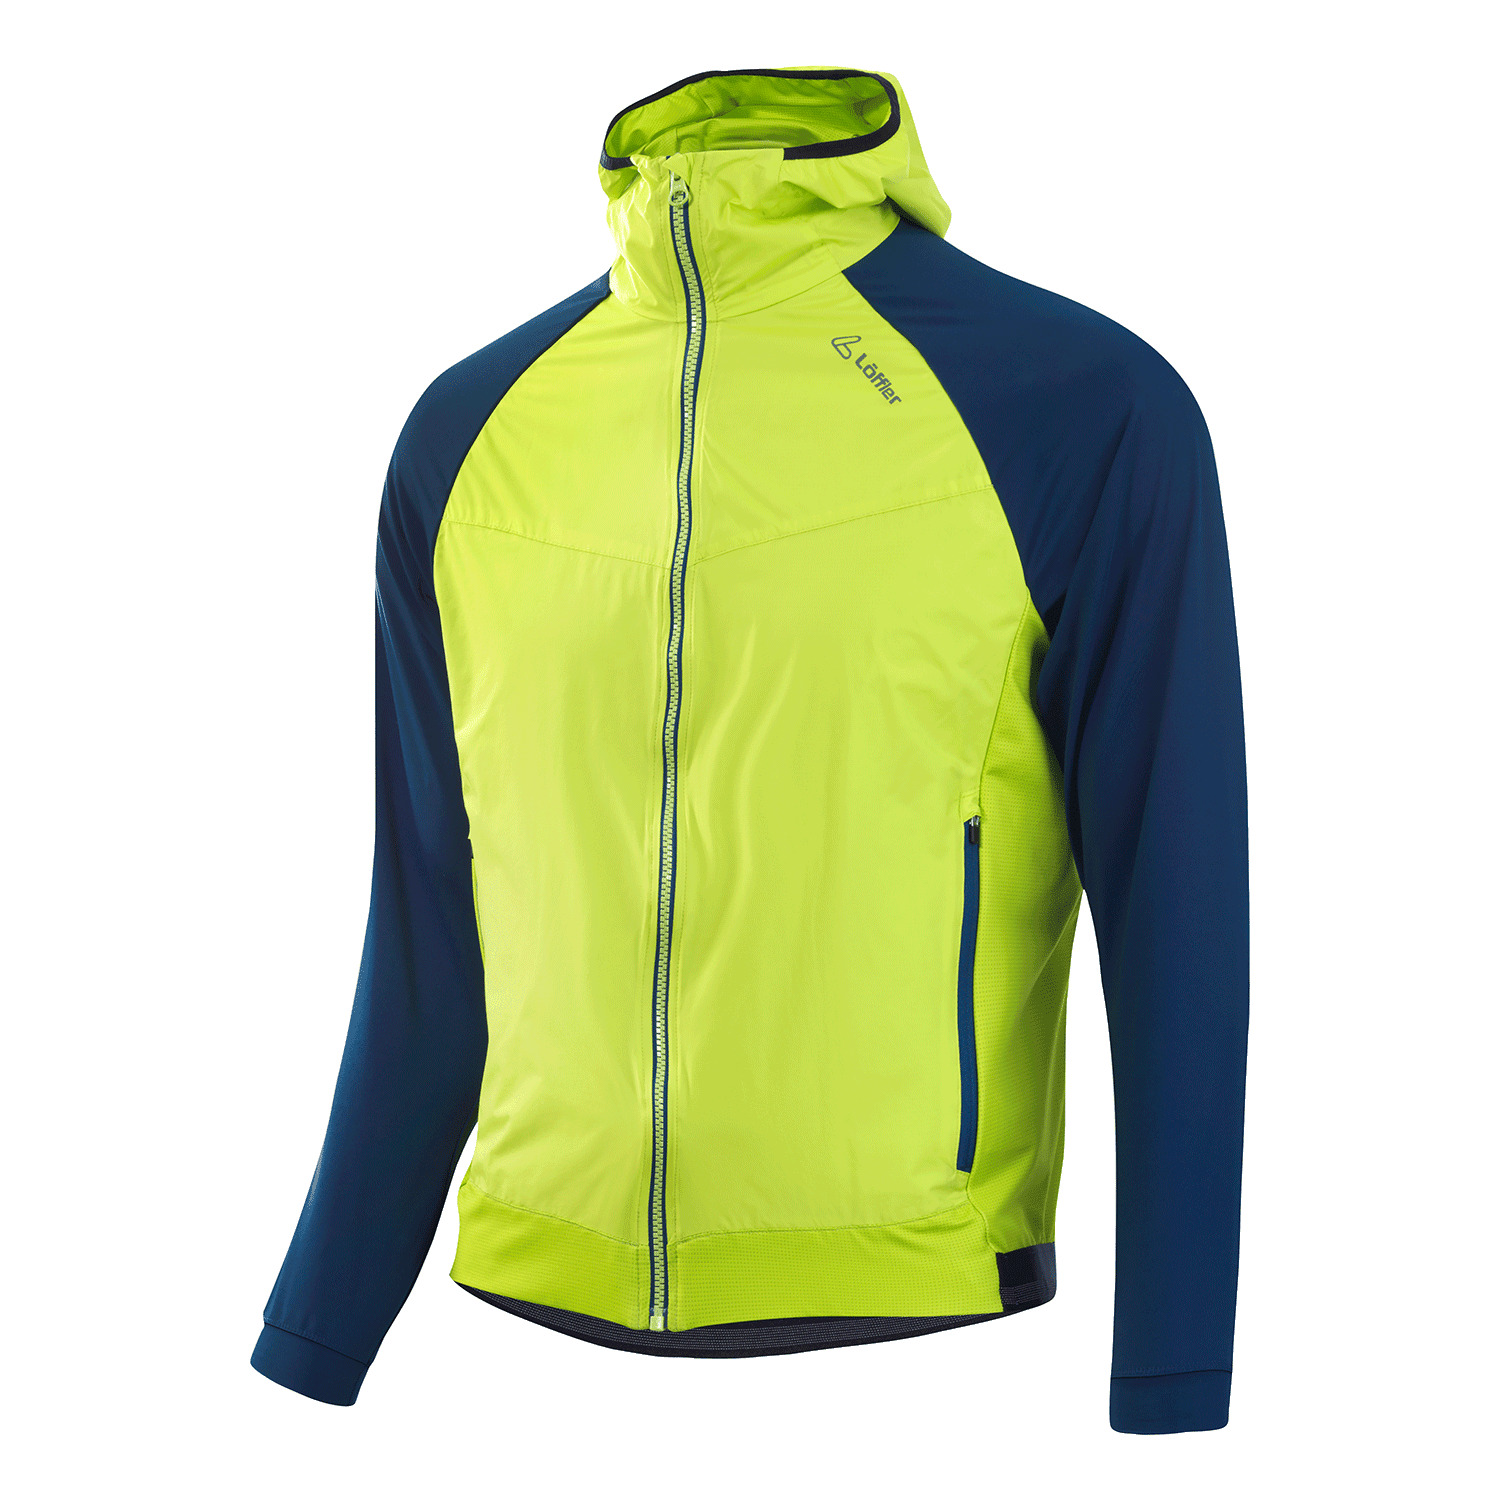 Sport-Jacken für Herren kaufen im Online-Shop von sportcollection 